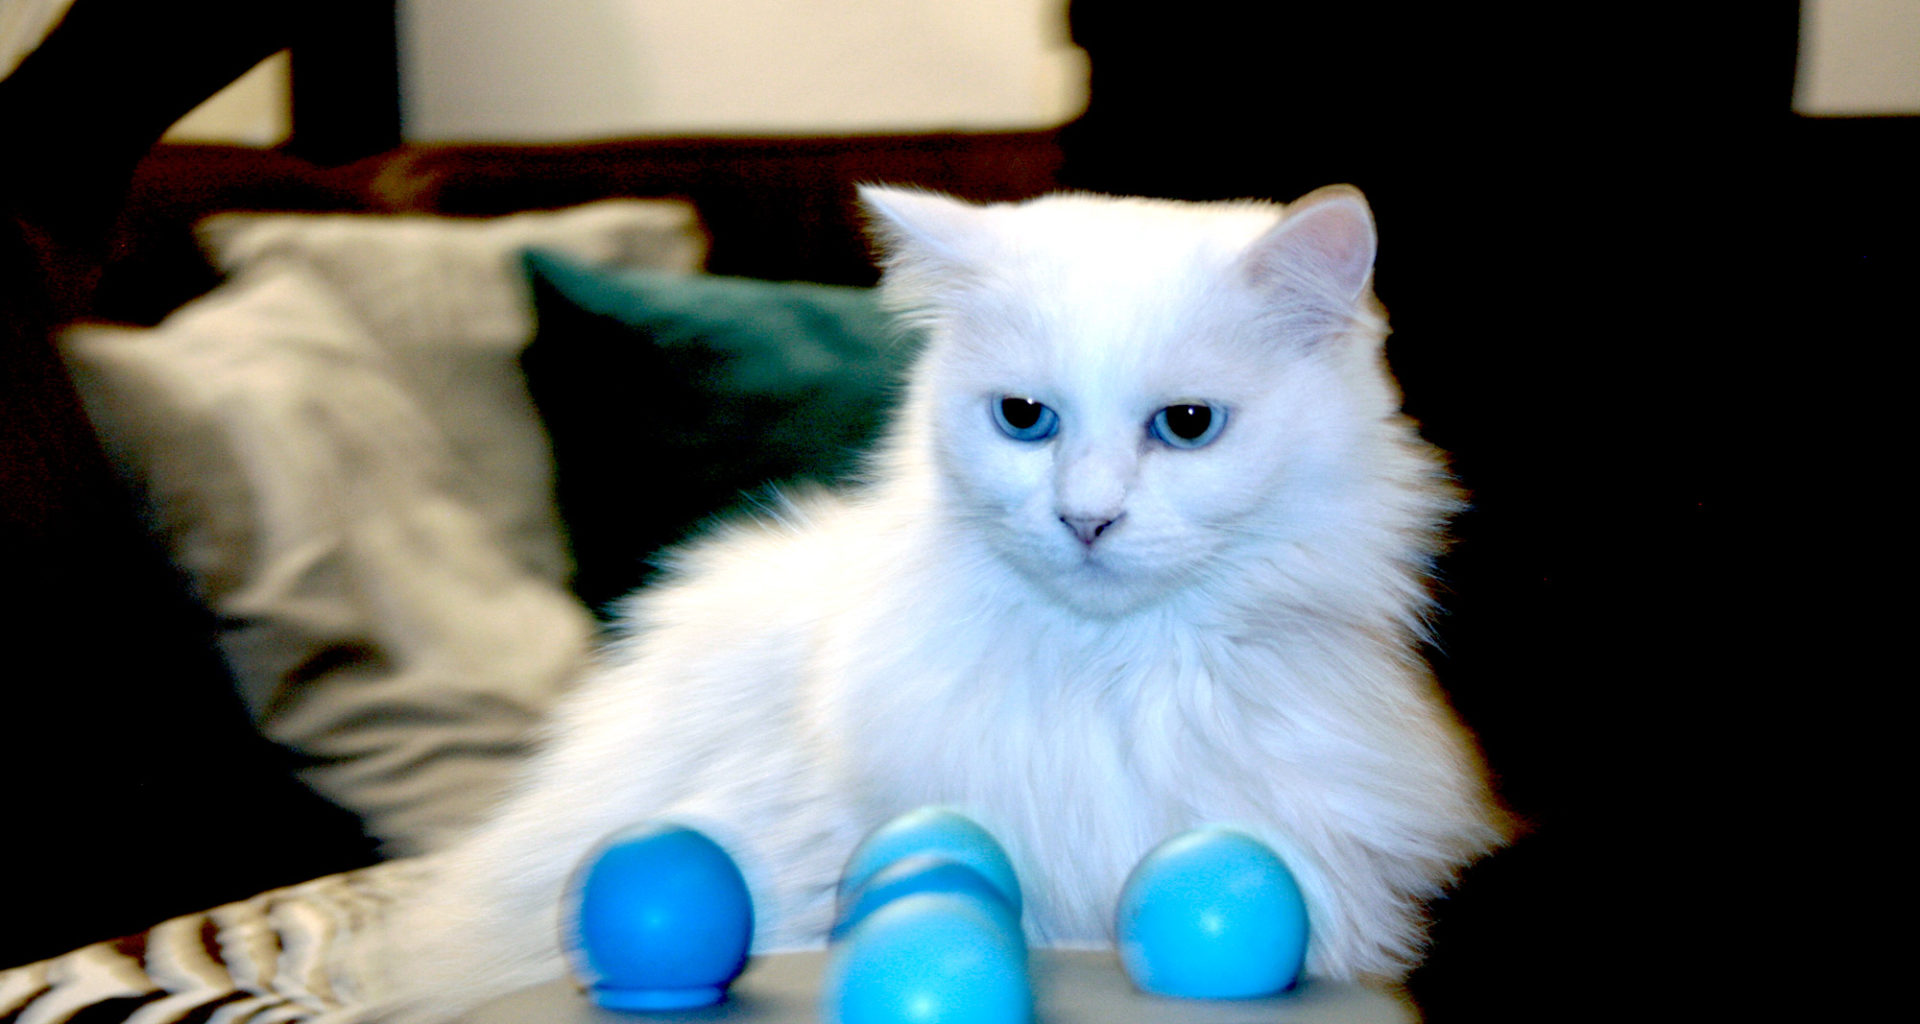 Weißer Kater "Chewbacca" mit leuchtend blauen Augen sitzt vor einem blauen Spielzeug mit Bällchen.